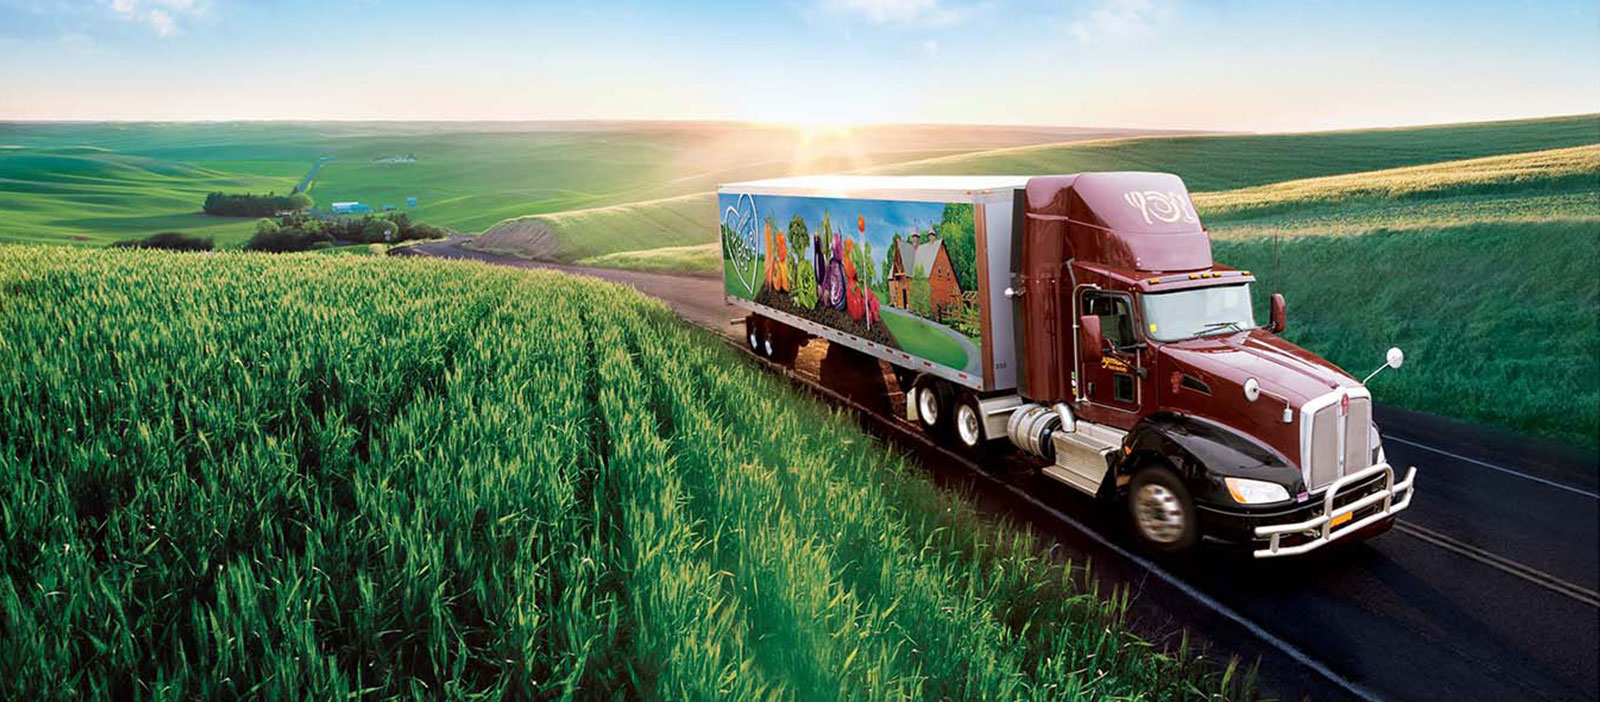 Wegmans truck driving through grassy field